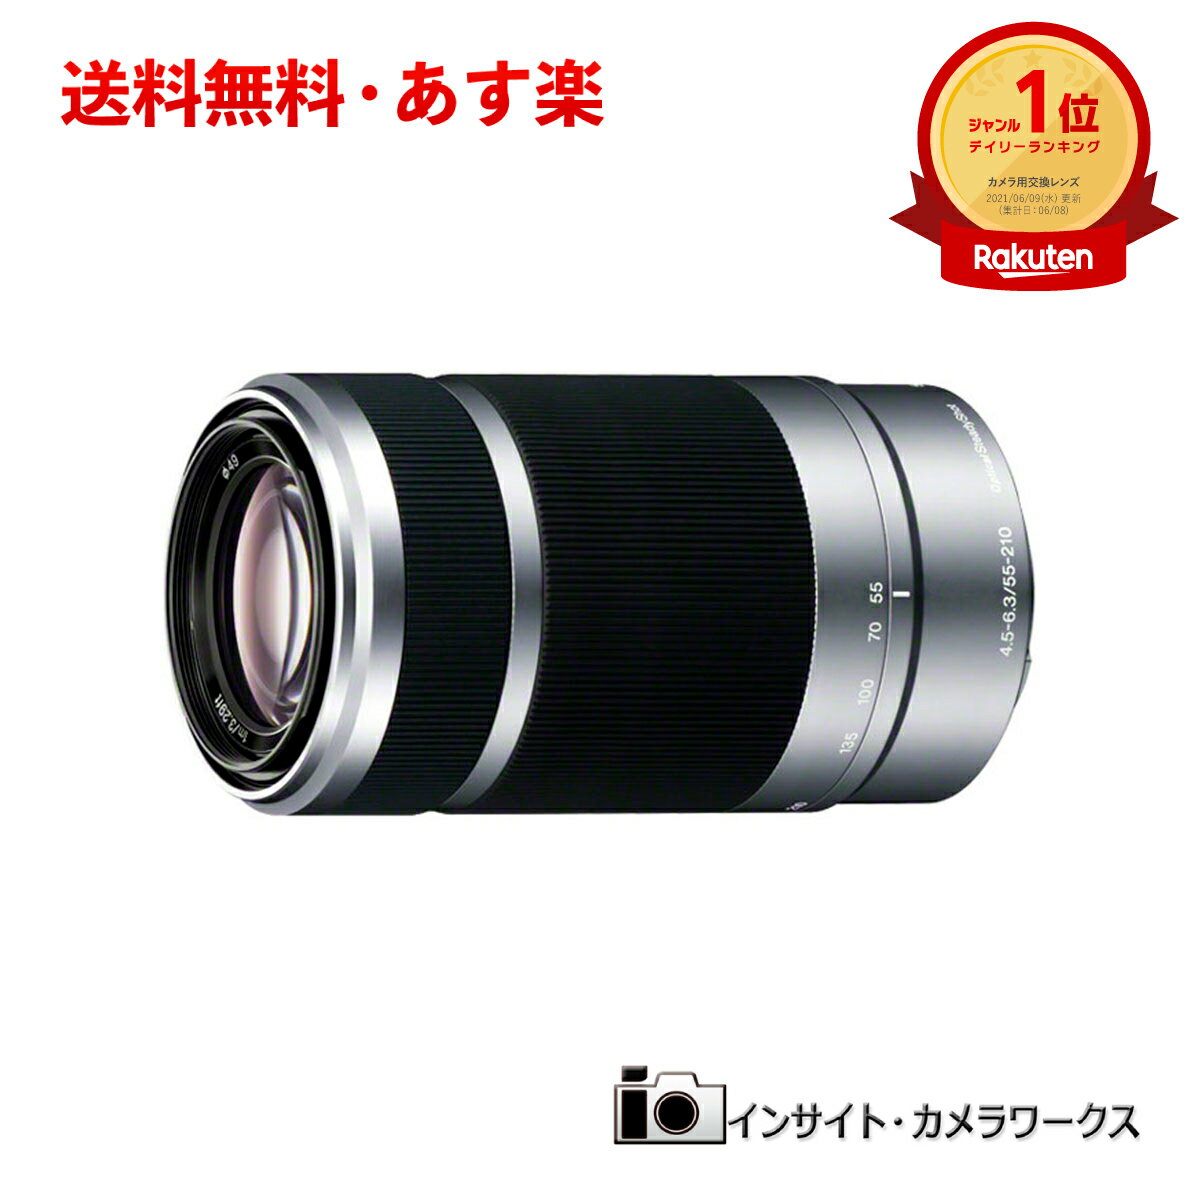 ソニー E 55-210mm F4.5-6.3 OSS SEL55210 シ